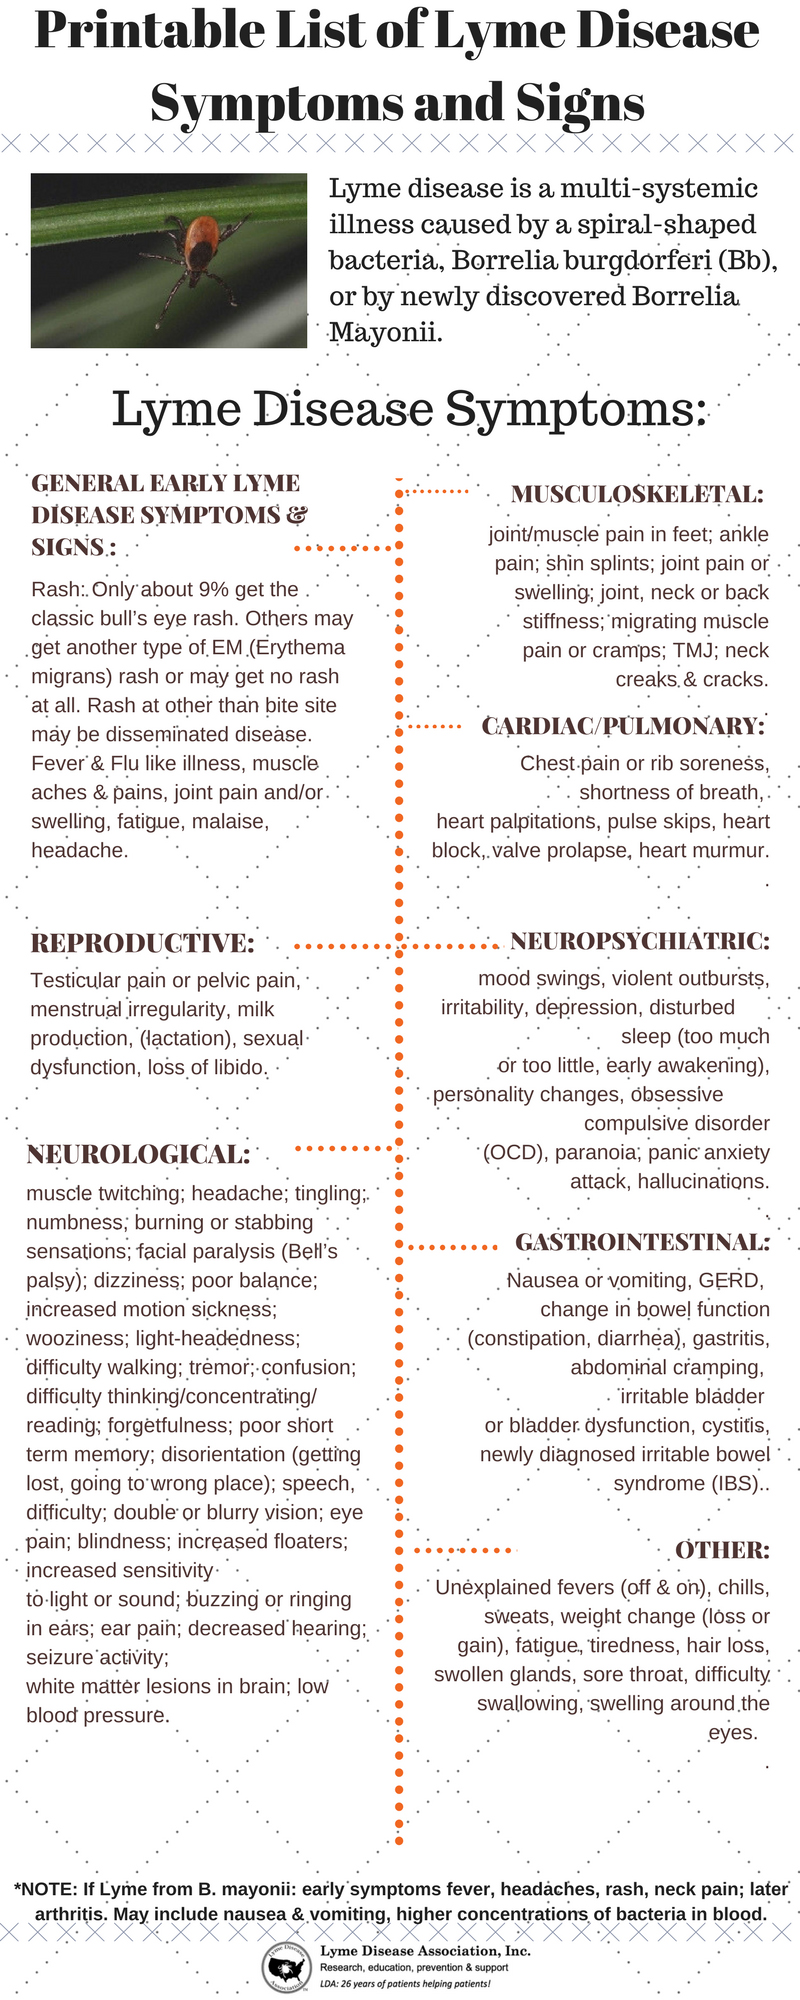 Symptoms infographic